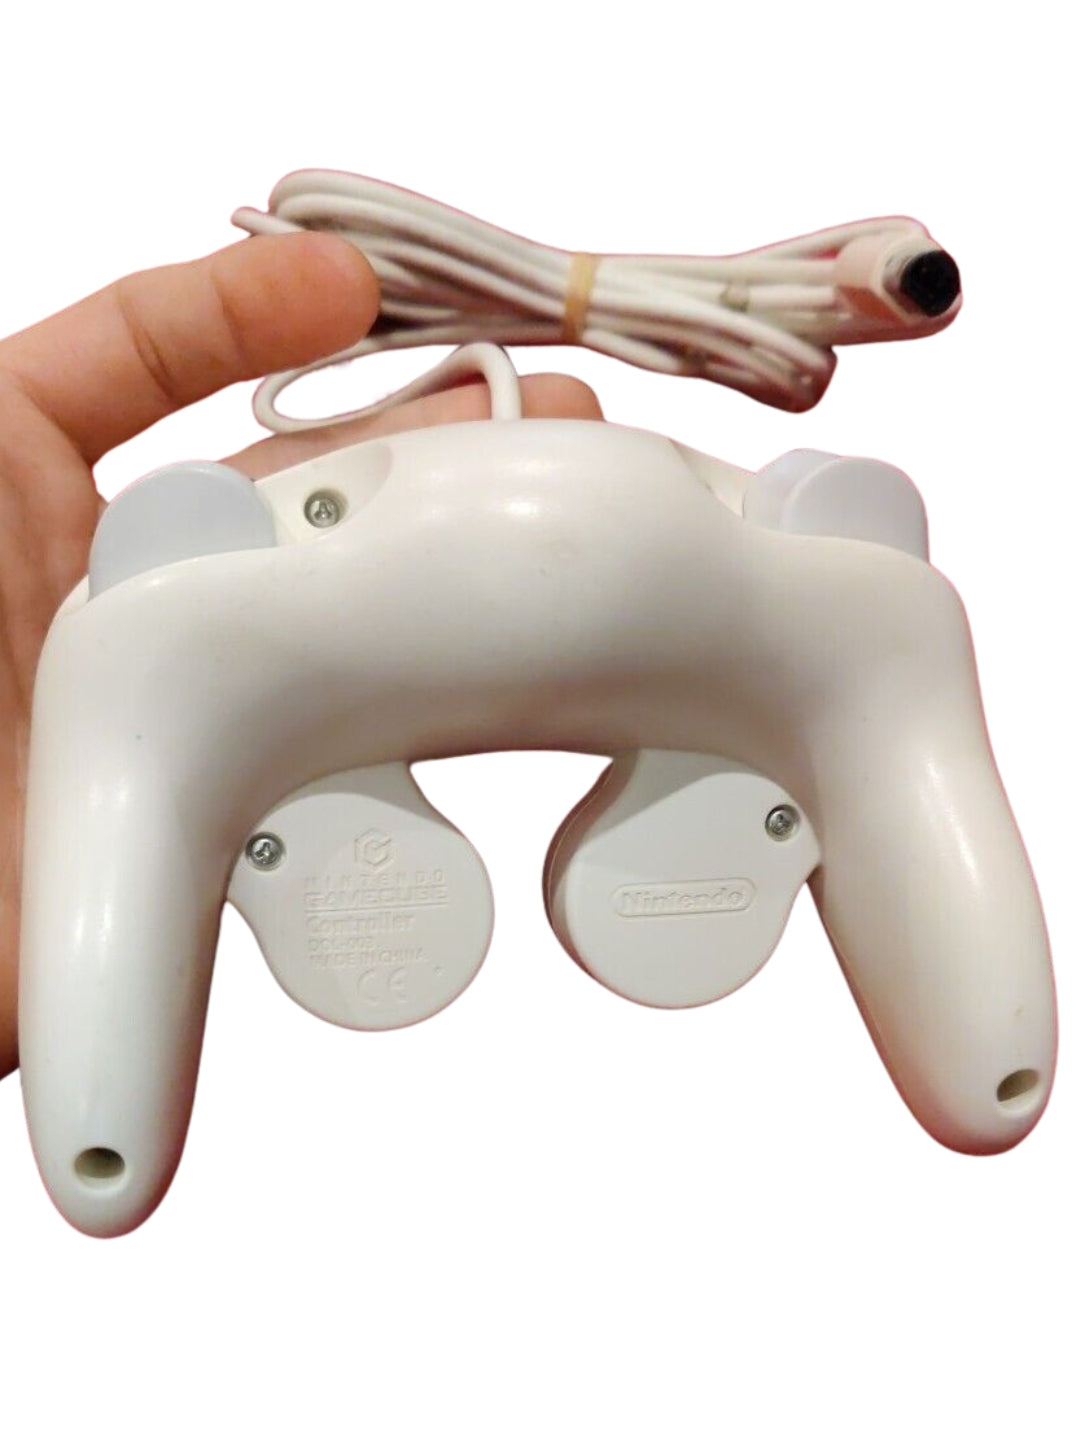 Official white Nintendo GAMECUBE controller from Nintendo.